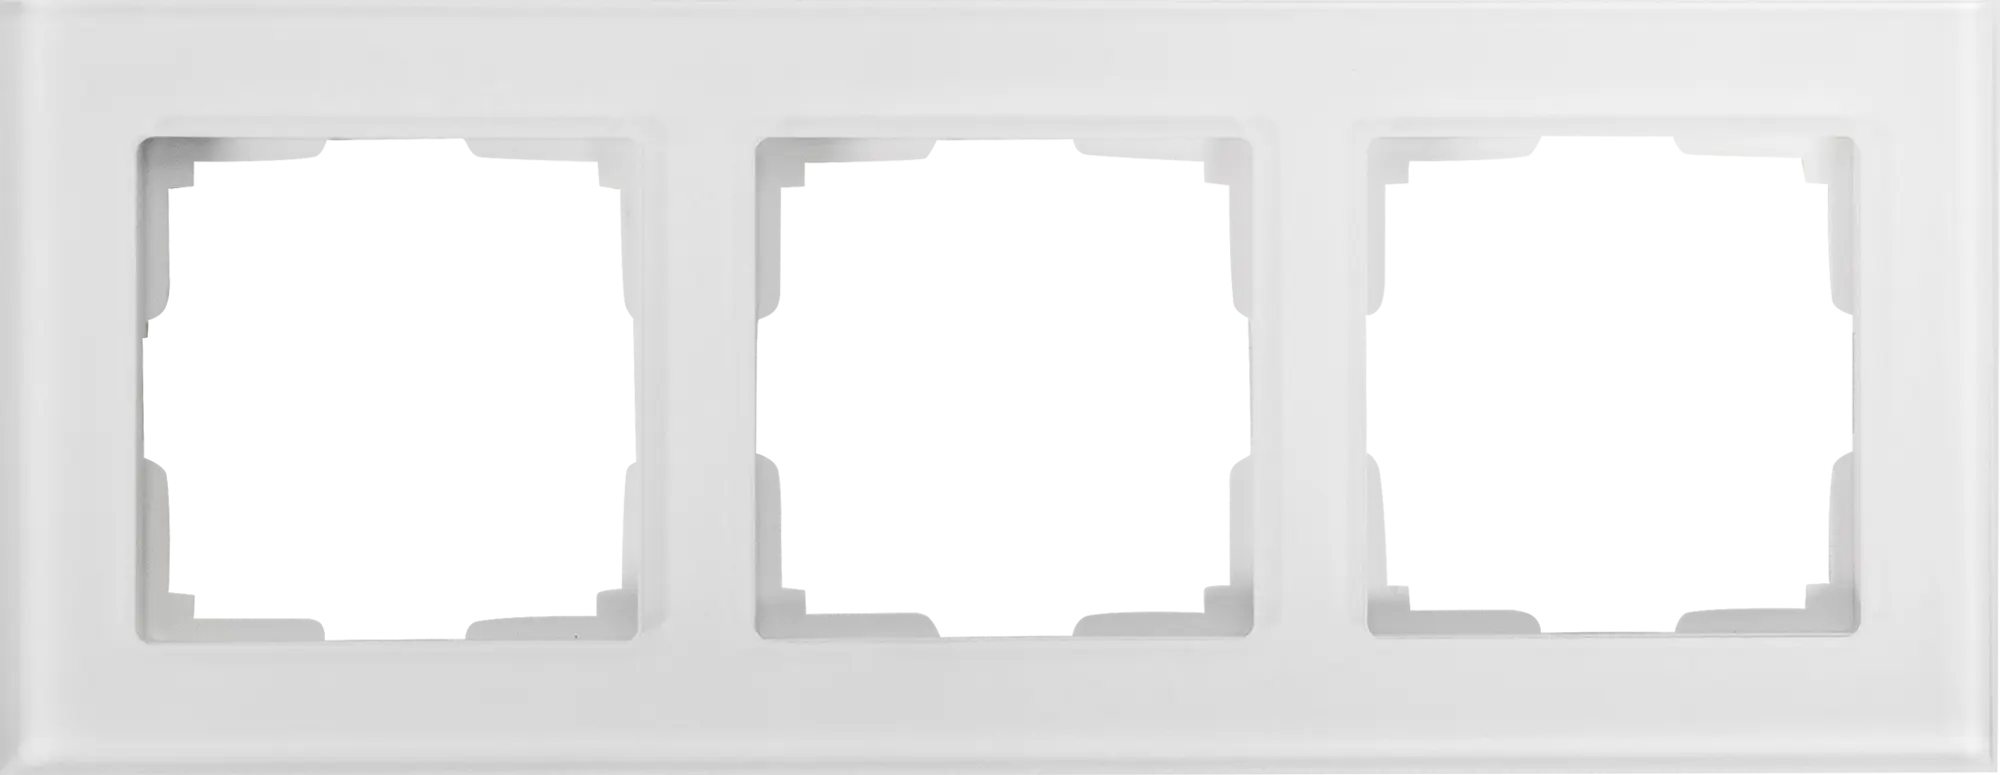 Рамка для розеток и выключателей Werkel Favorit 3 поста стекло цвет белый рамка на 3 поста werkel favorit w0031111 4690389159794